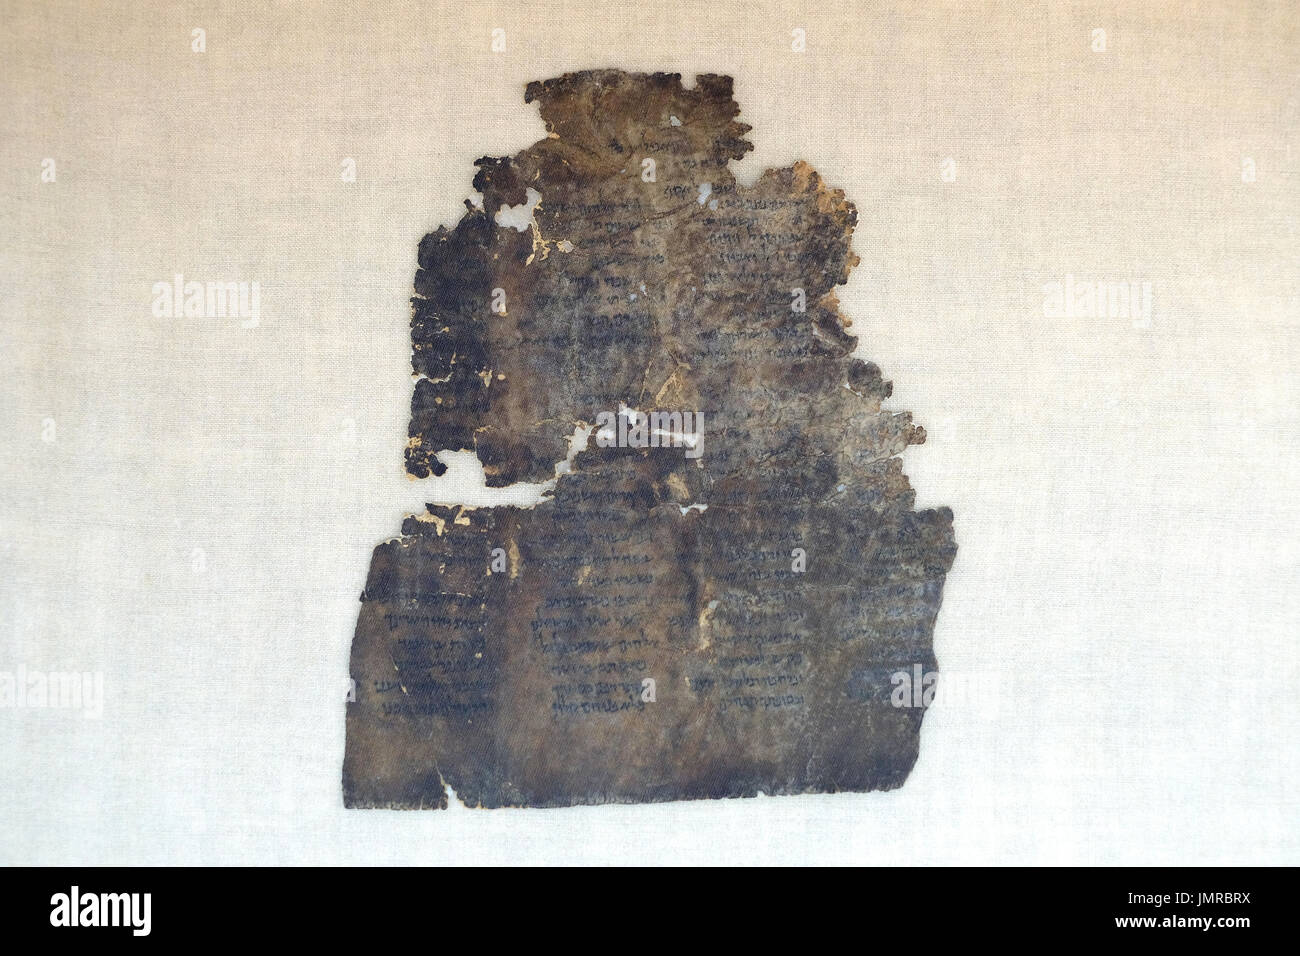 Un fragment de Mer Morte Psaumes livre écrit en hébreu trouvés à Qumran grottes dans le laboratoire de préservation de l'Autorité des antiquités d'Israël au Musée d'Israël à Jérusalem Israël Banque D'Images